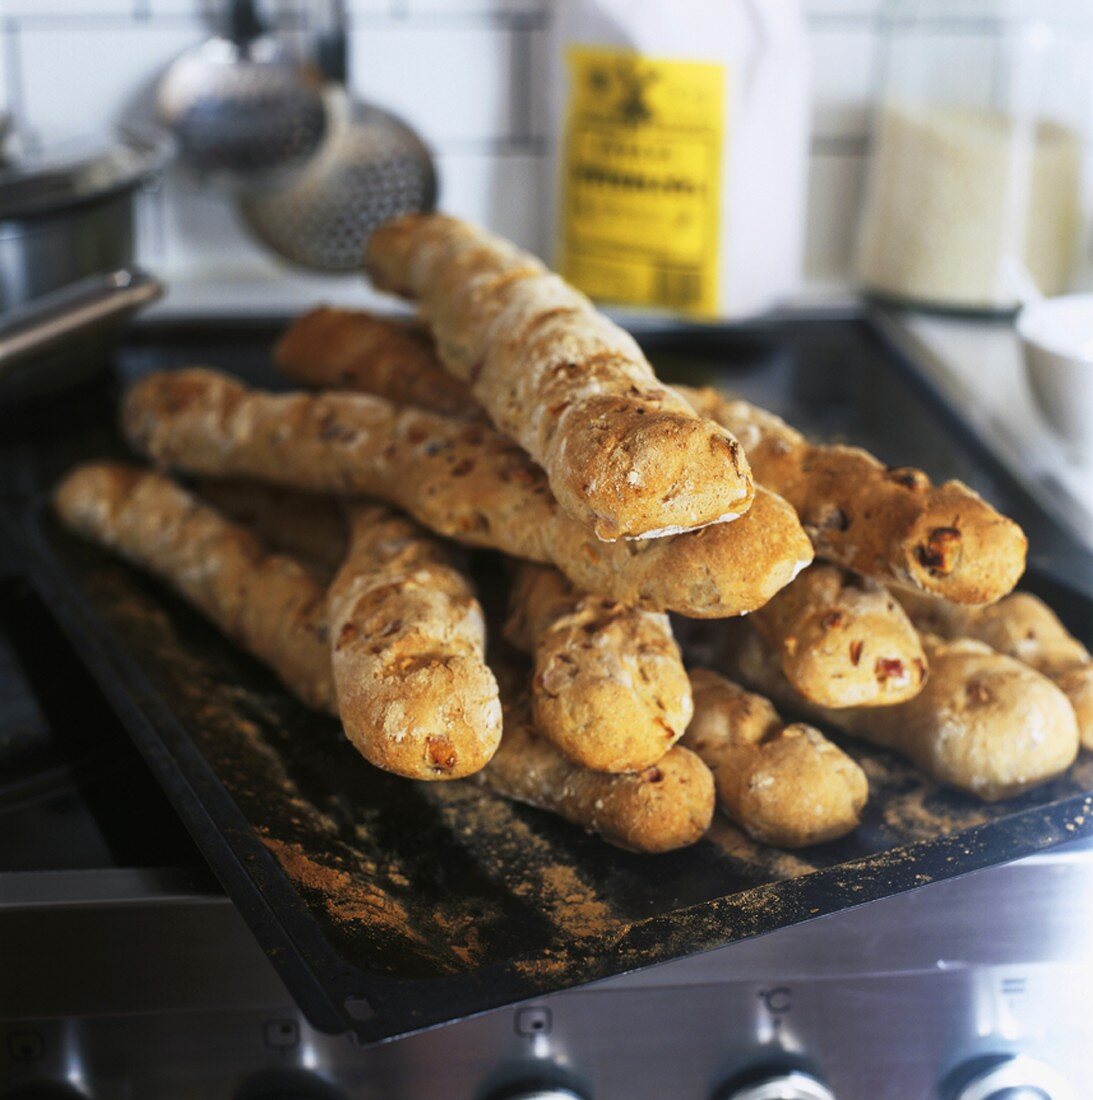 Freshly-baked baguettes